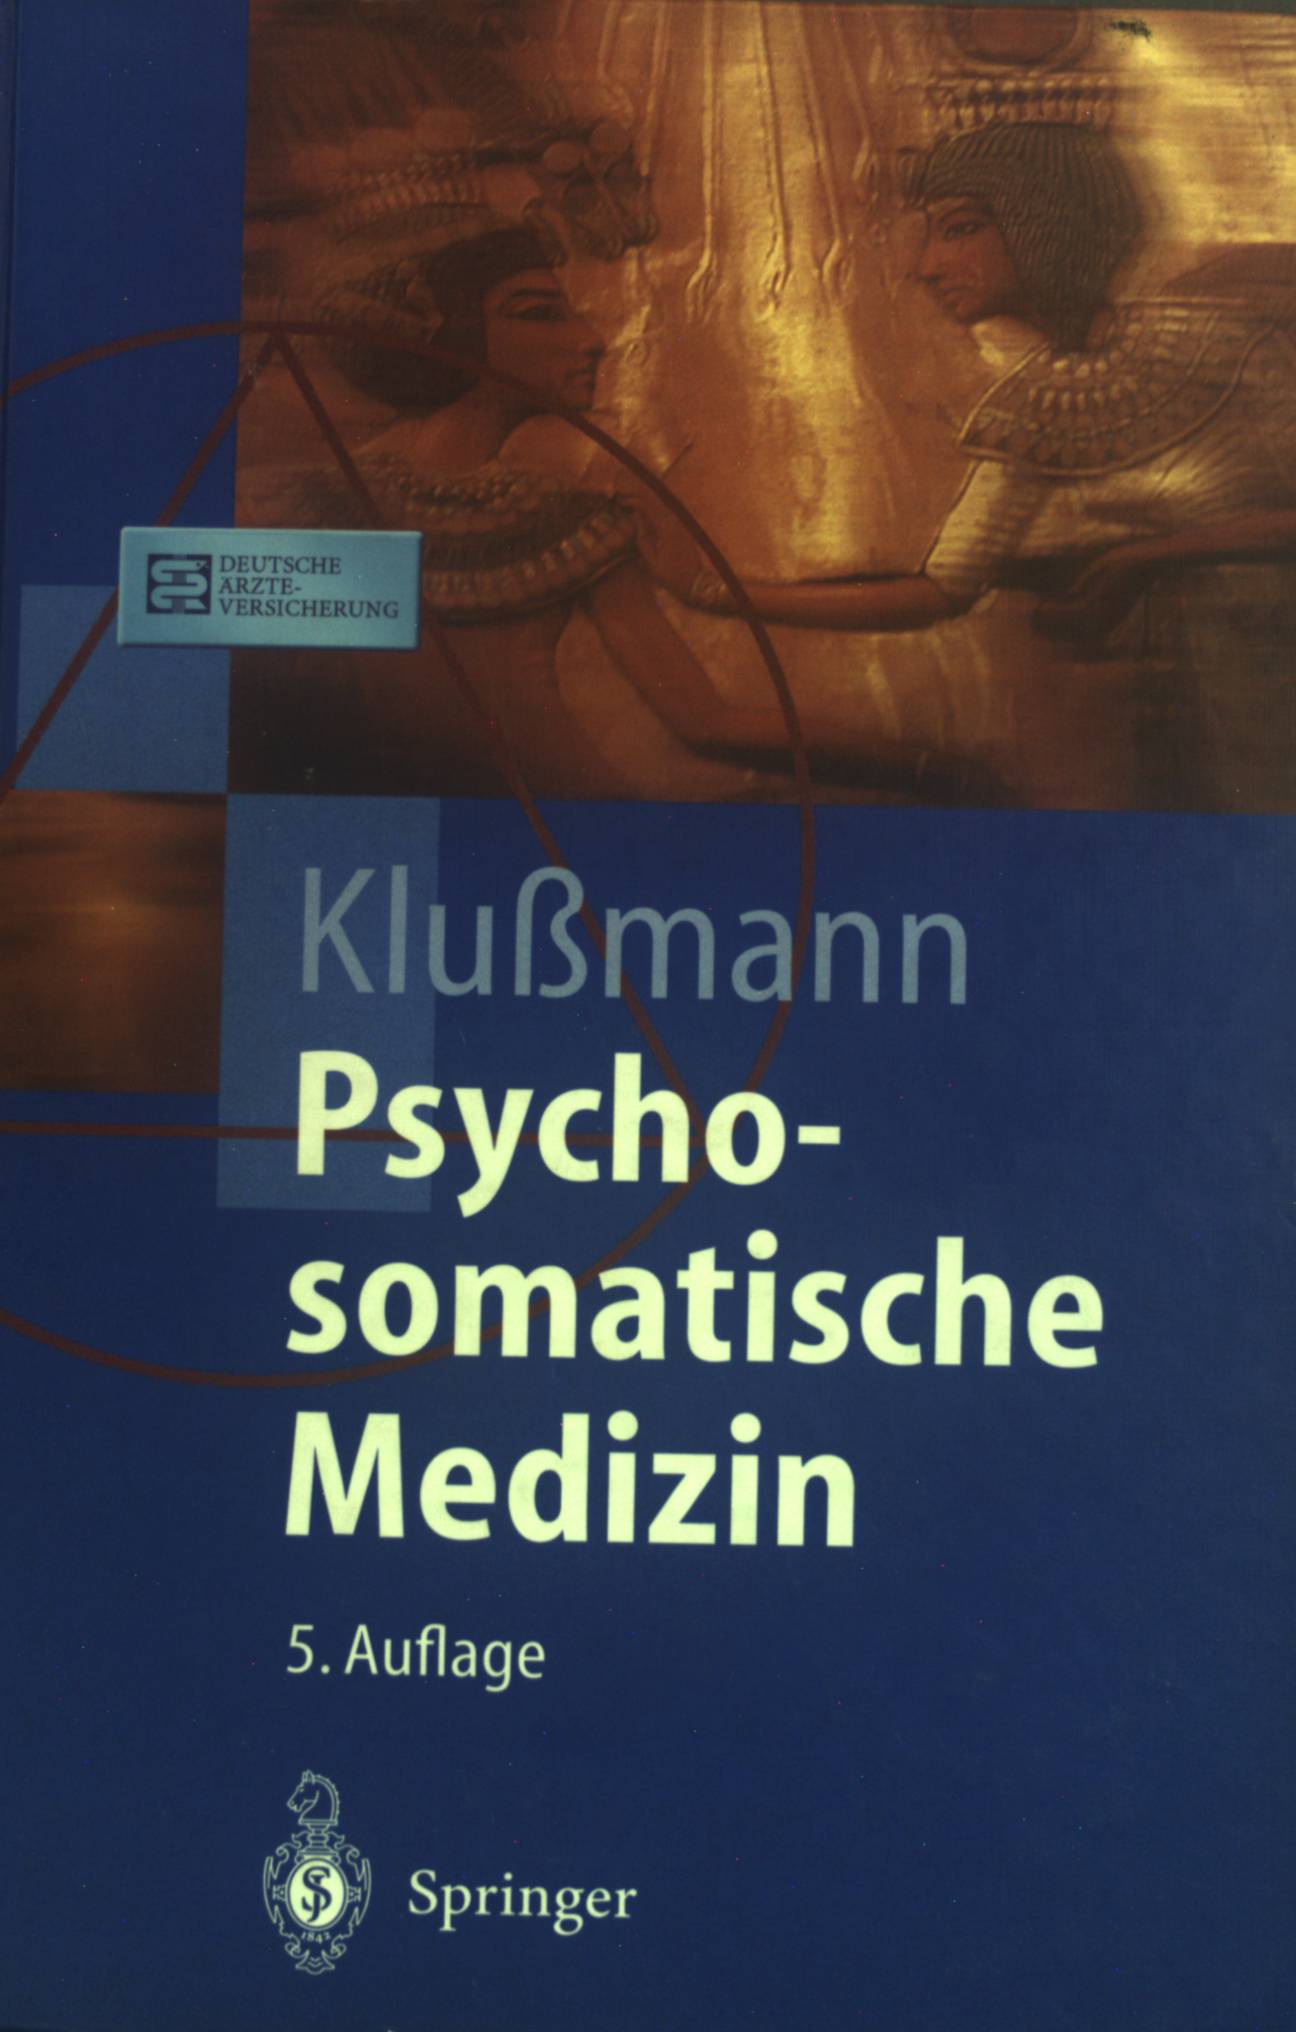 Psychosomatische Medizin : ein Kompendium für alle medizinischen Teilbereiche. Springer-Lehrbuch - Klußmann, Rudolf und Manfred Ackenheil